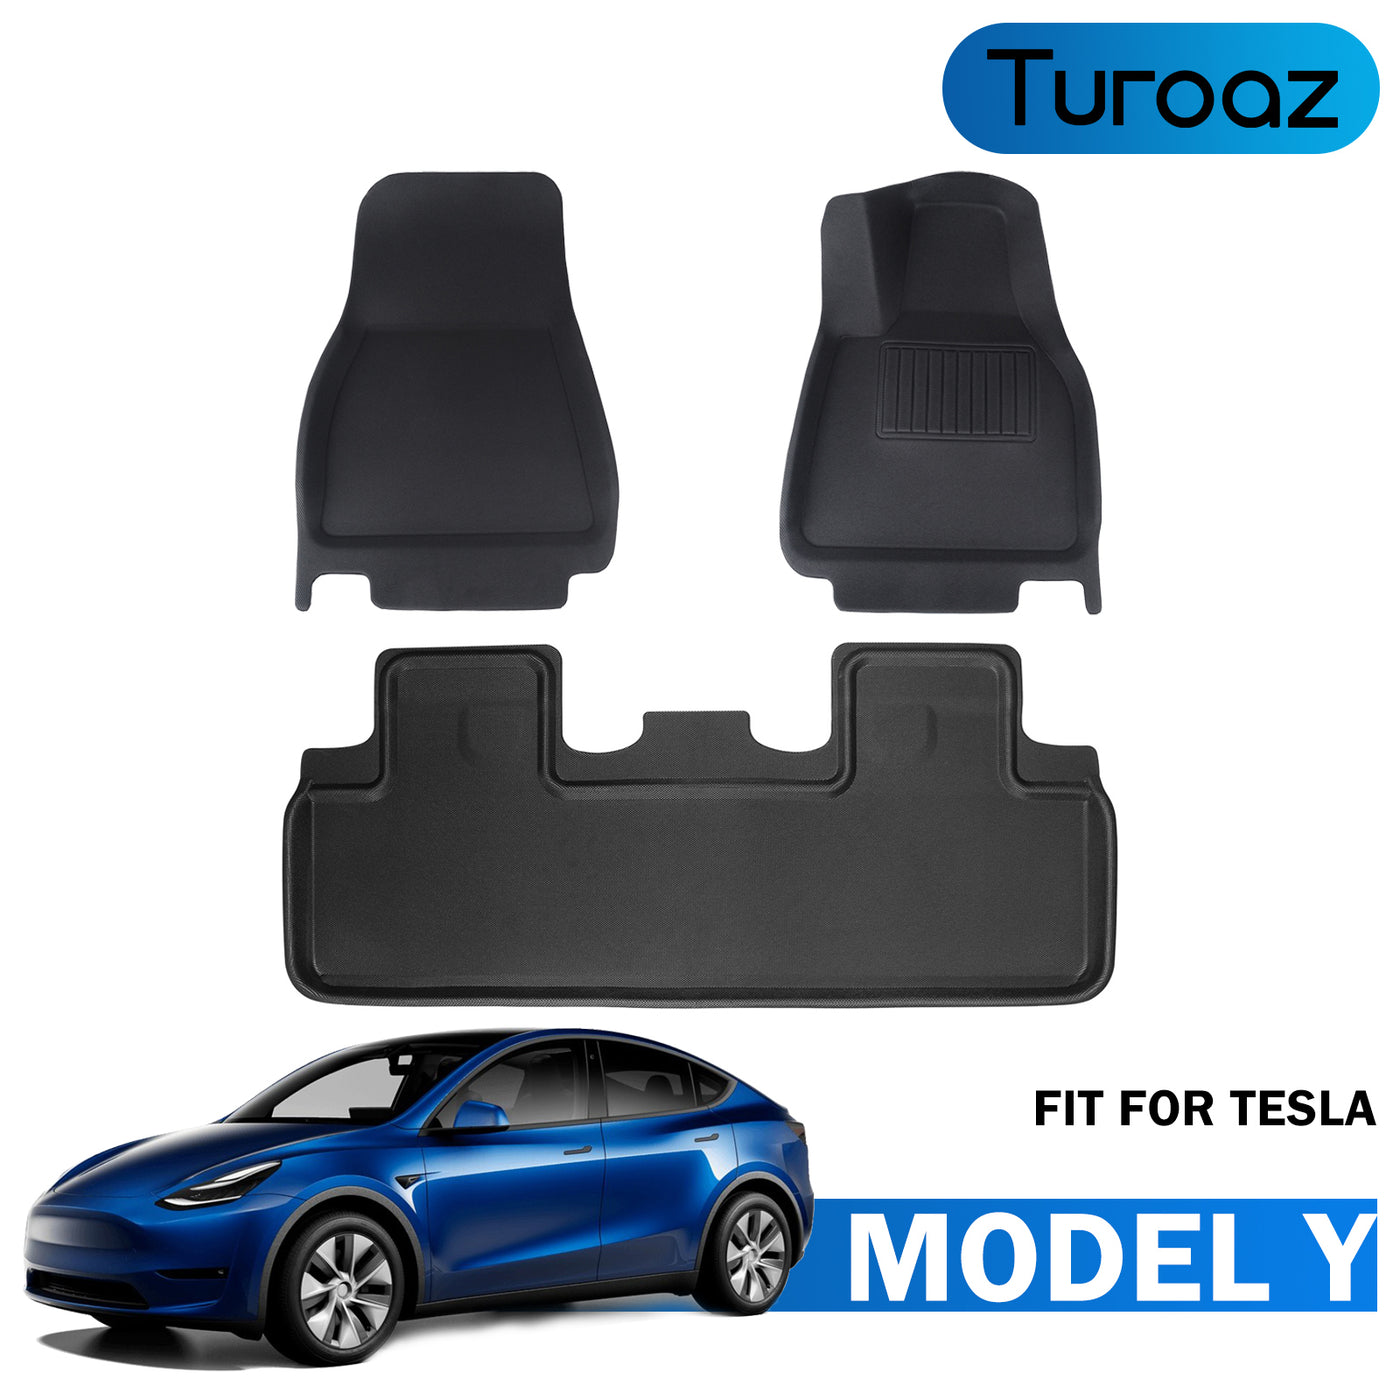 Turoaz Right-Hand Drive Floor Mats Fit For Tesla Model Y 2021up, Floor